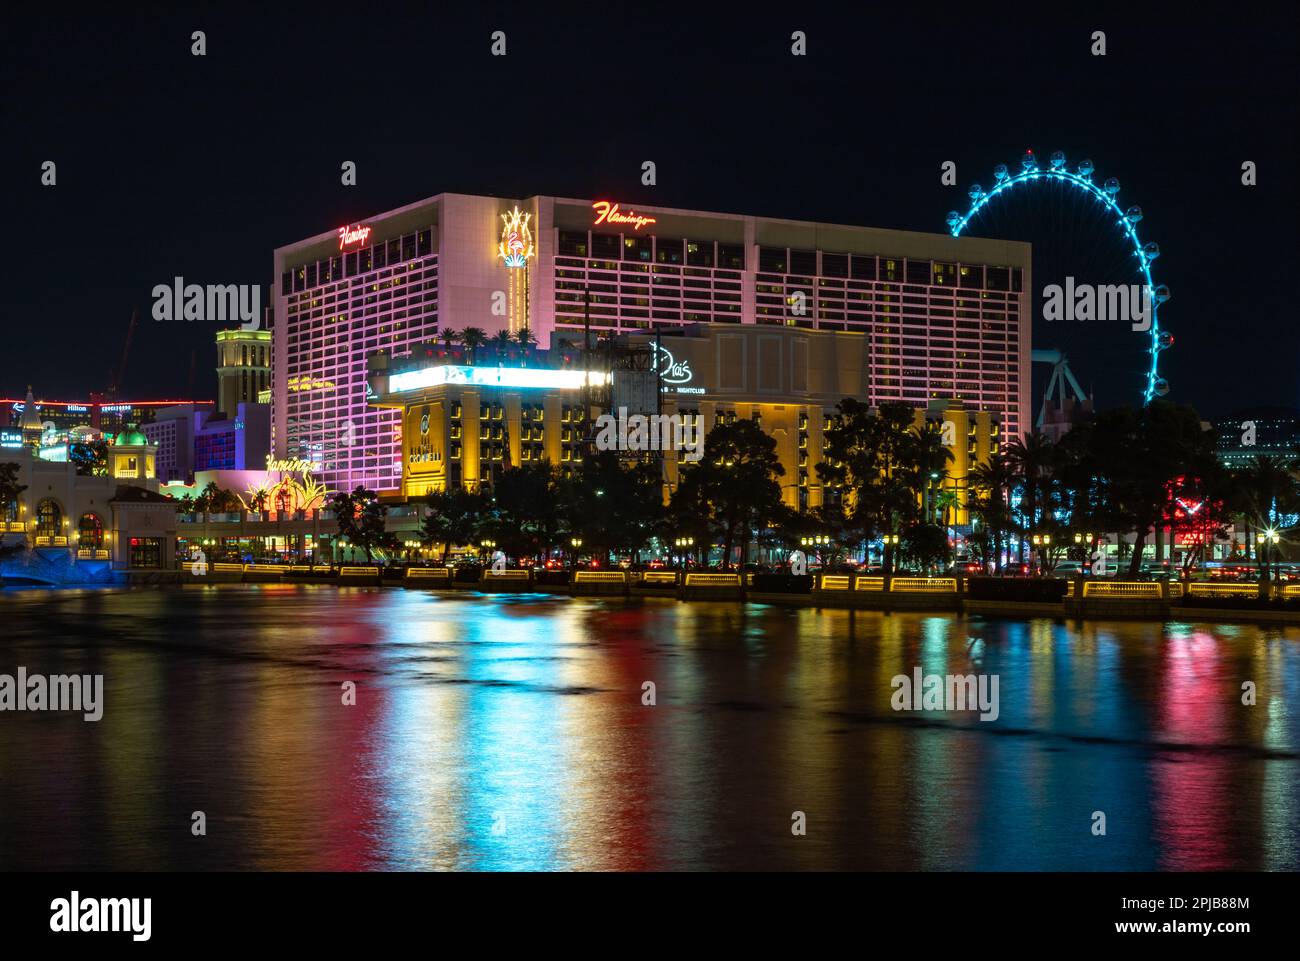 Ein Bild des Flamingo Las Vegas Hotel and Casino bei Nacht, reflektiert auf dem Bellagio-Brunnen. Stockfoto